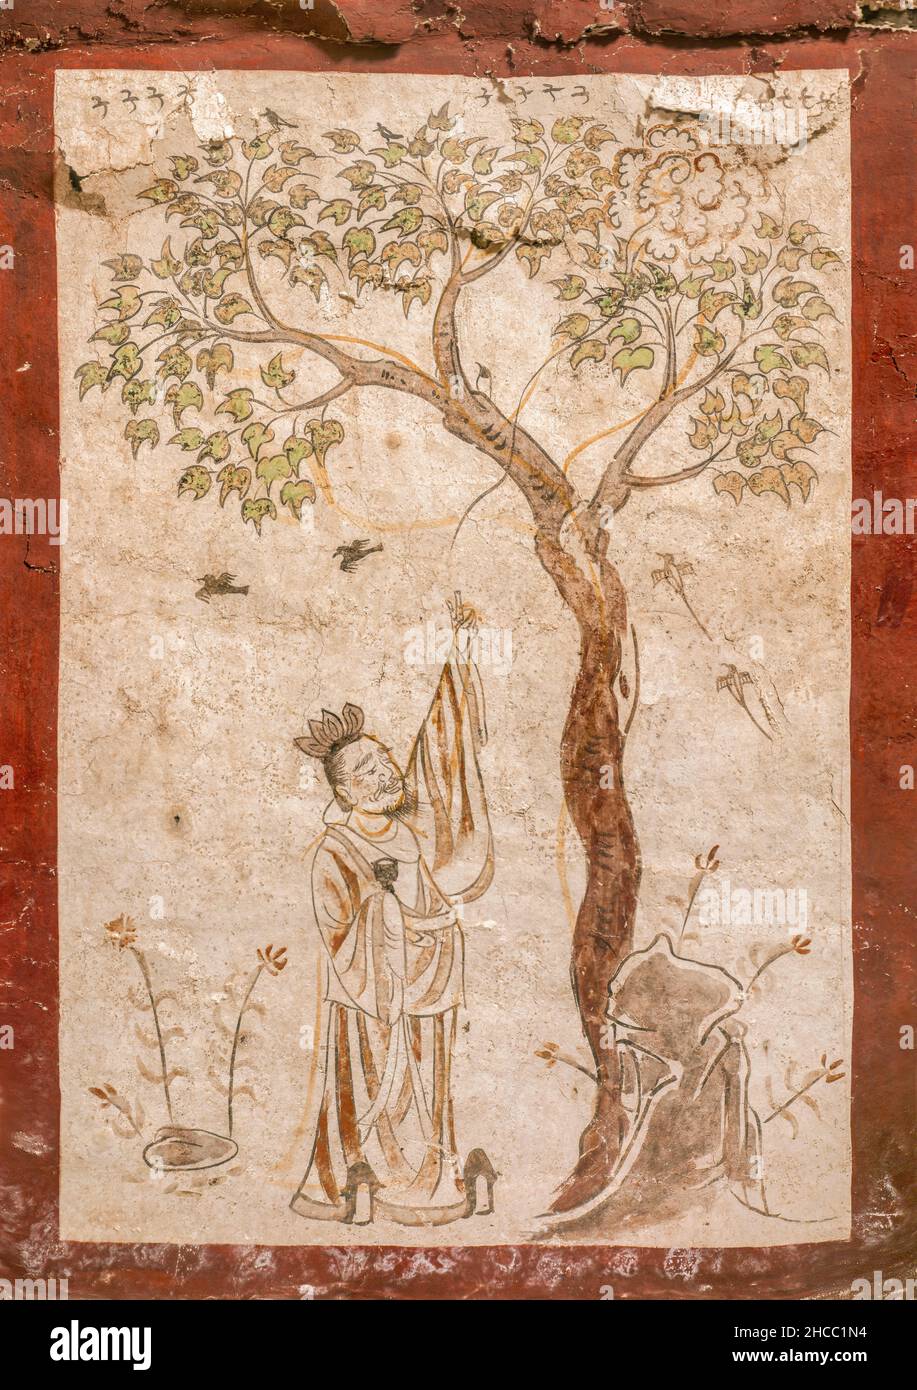 (211227) -- TAIYUAN, 27. Dezember 2021 (Xinhua) -- das vom Taiyuan Institut für Schutz kultureller Reliquien zur Verfügung gestellte, nicht datierte Aktenfoto zeigt einen Teil der restaurierten Wandmalereien eines antiken Grabes aus der Tang Dynastie (618-907) in Taiyuan, der nordchinesischen Provinz Shanxi. Das Grab wurde 2019 in einer Grundschule in Taiyuan, der Hauptstadt von Shanxi, entdeckt und später zum Schutz und zur Restaurierung ins Museum verlegt. Mängel an den Wandgemälden wie Risse, Hohlstellen und Schönheitsfehler wurden behoben, und das Grab wird in Zukunft für die Öffentlichkeit zugänglich sein, sagte das Wandmuseum der nördlichen Qi-Dynastie Taiyuan. Zoll Stockfoto